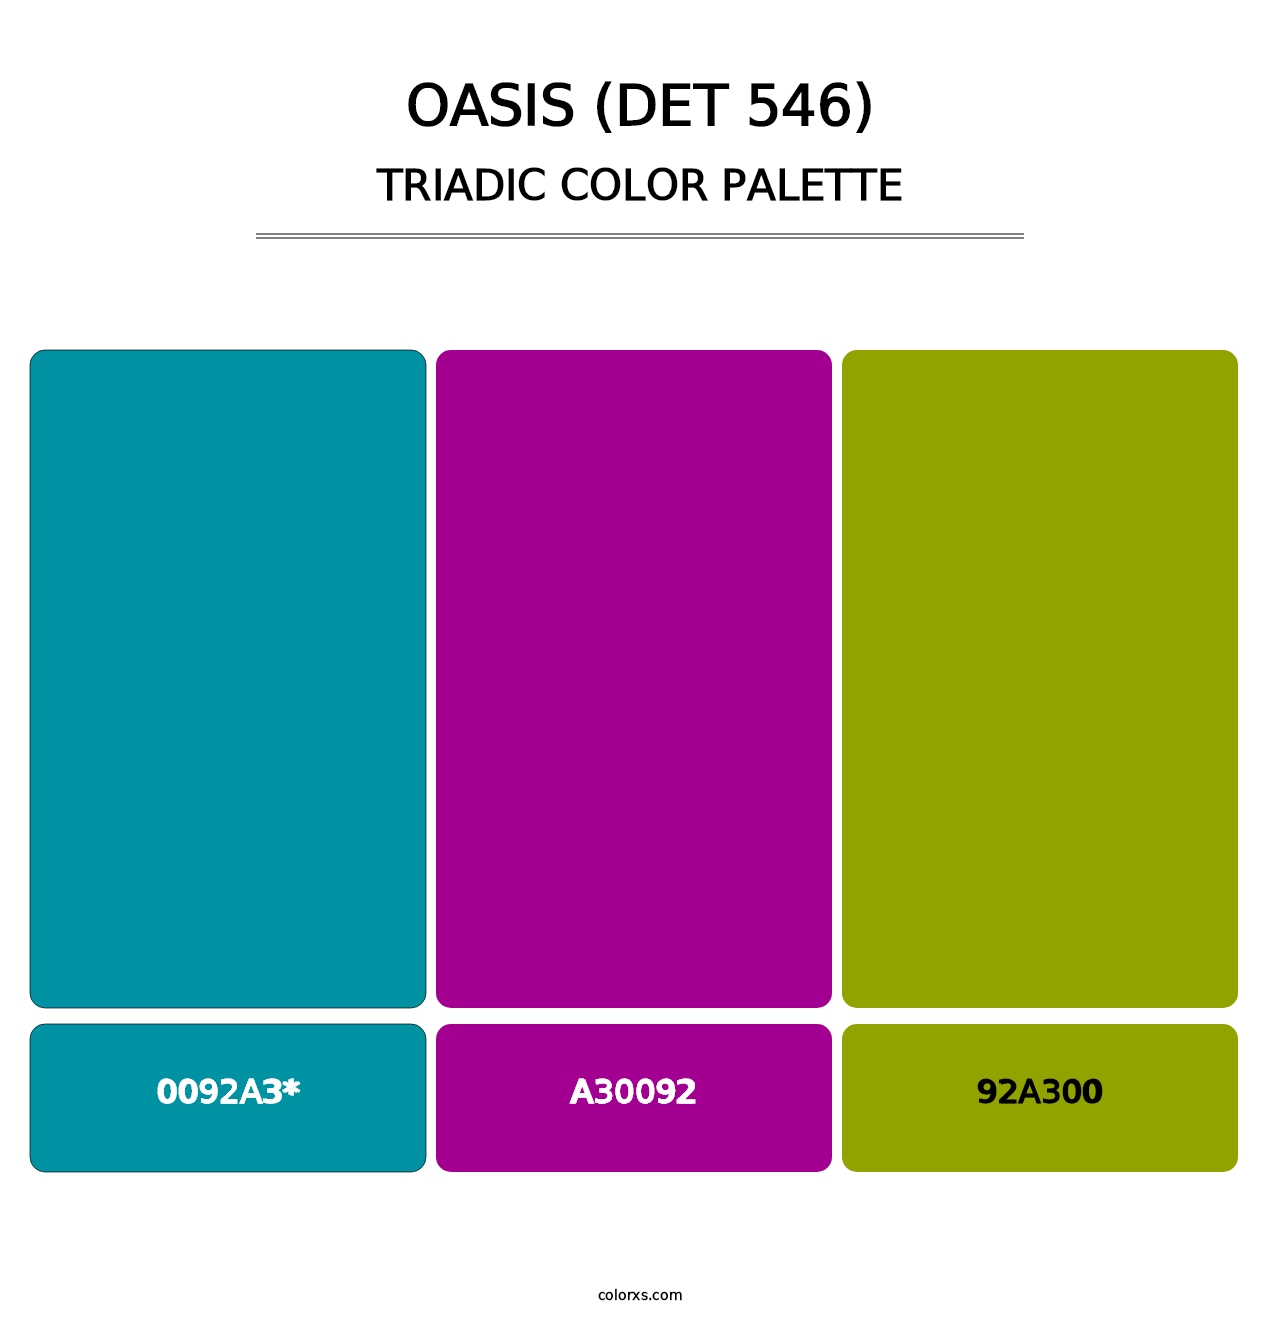 Oasis (DET 546) - Triadic Color Palette